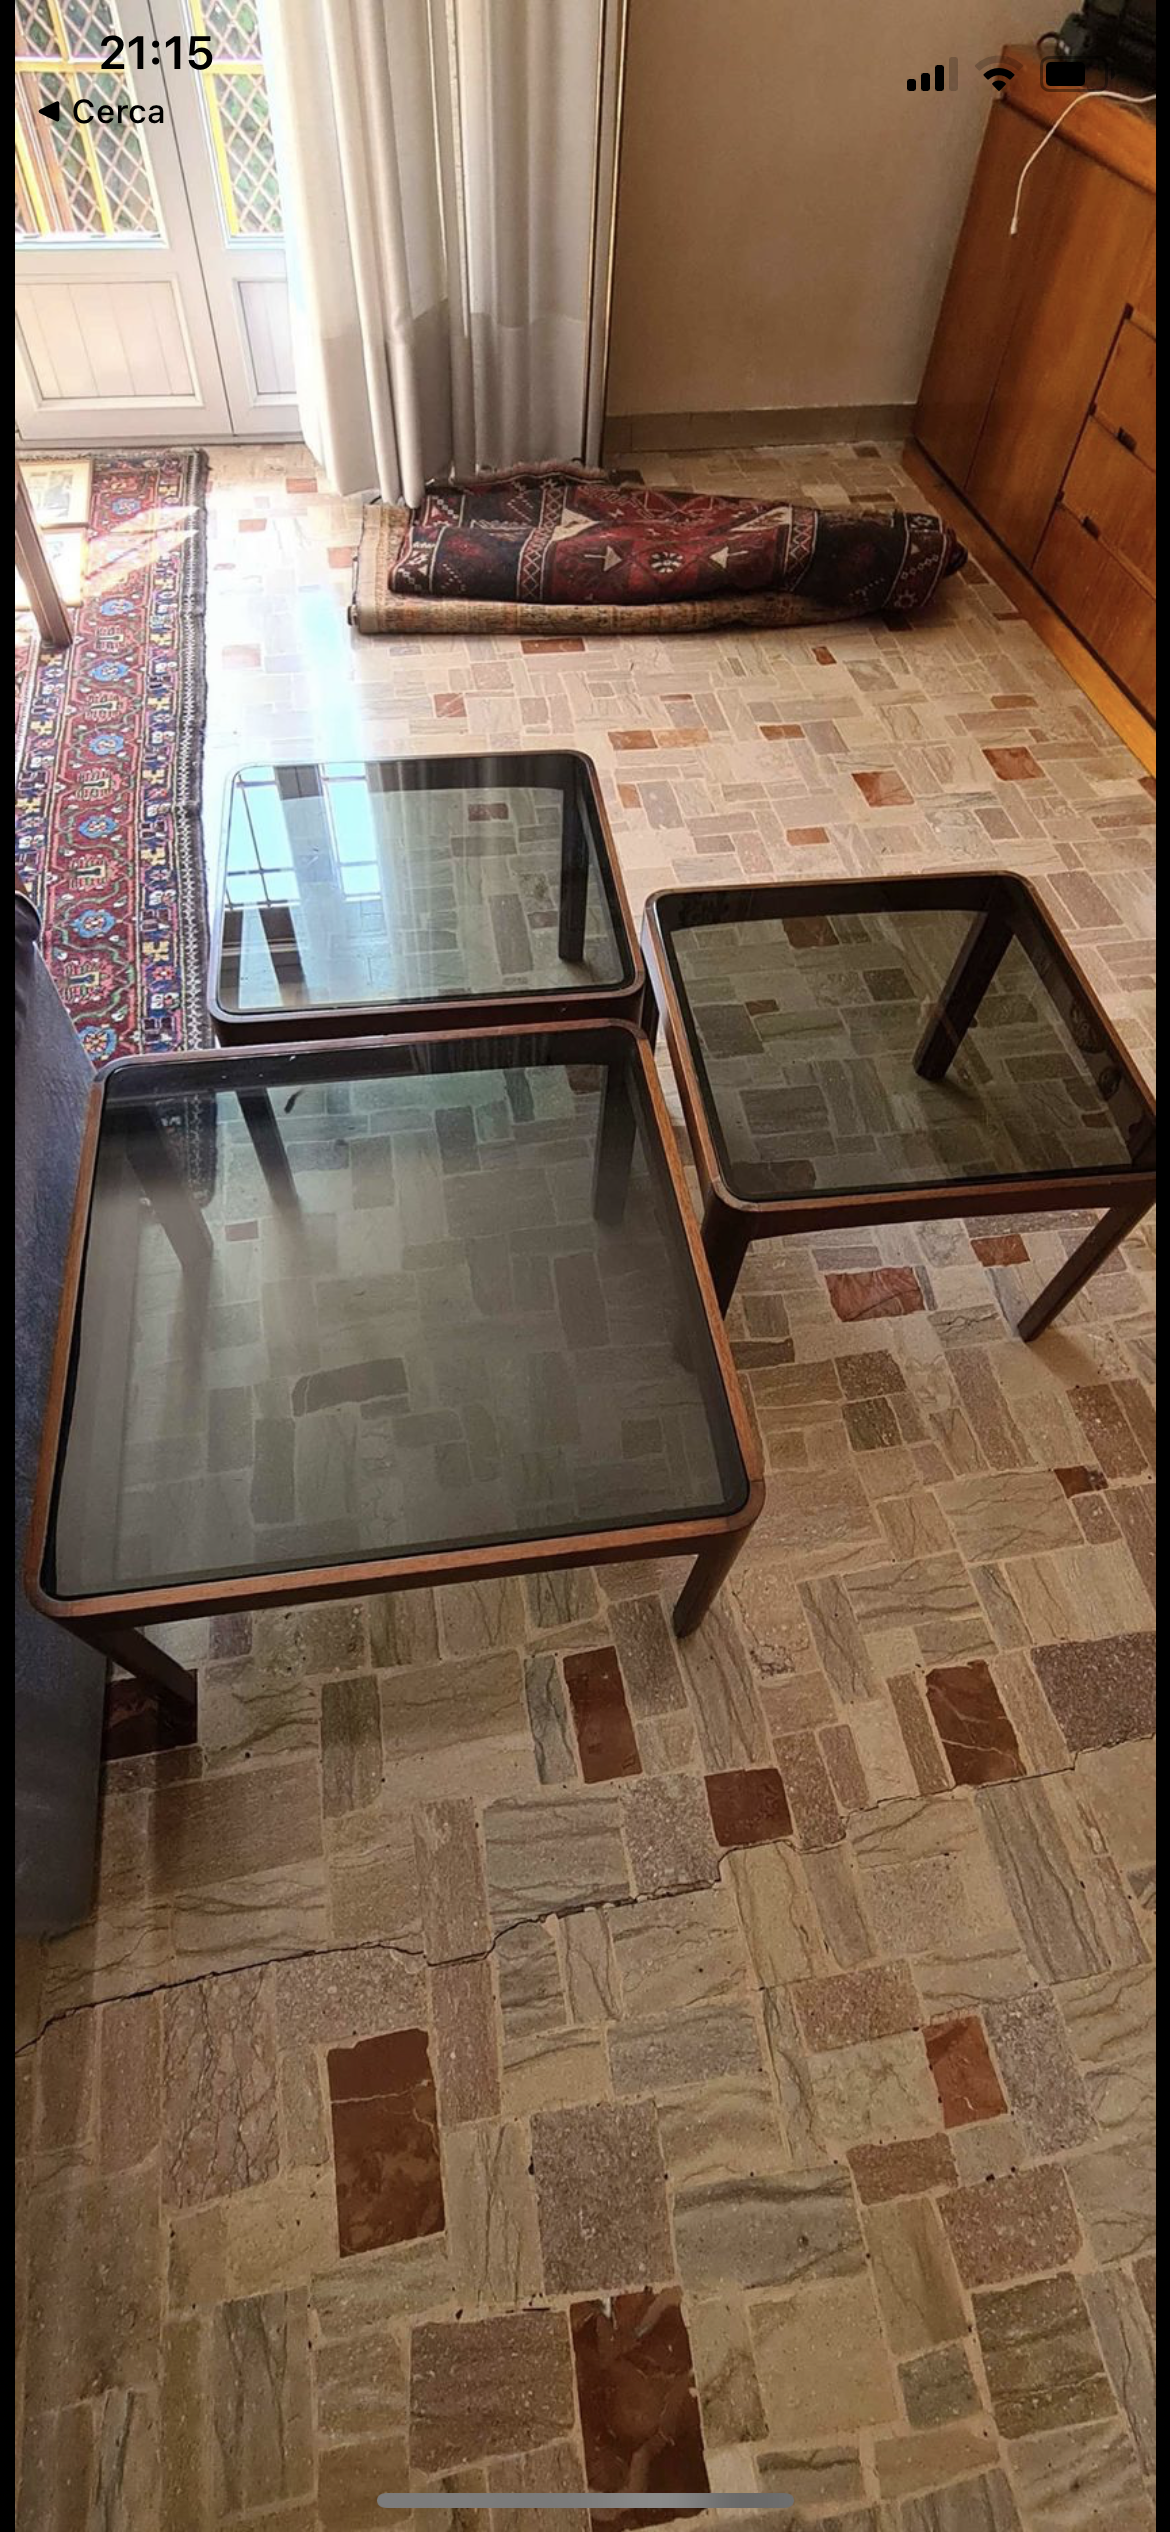 Trio de tables basses Poltronova en bois et verre